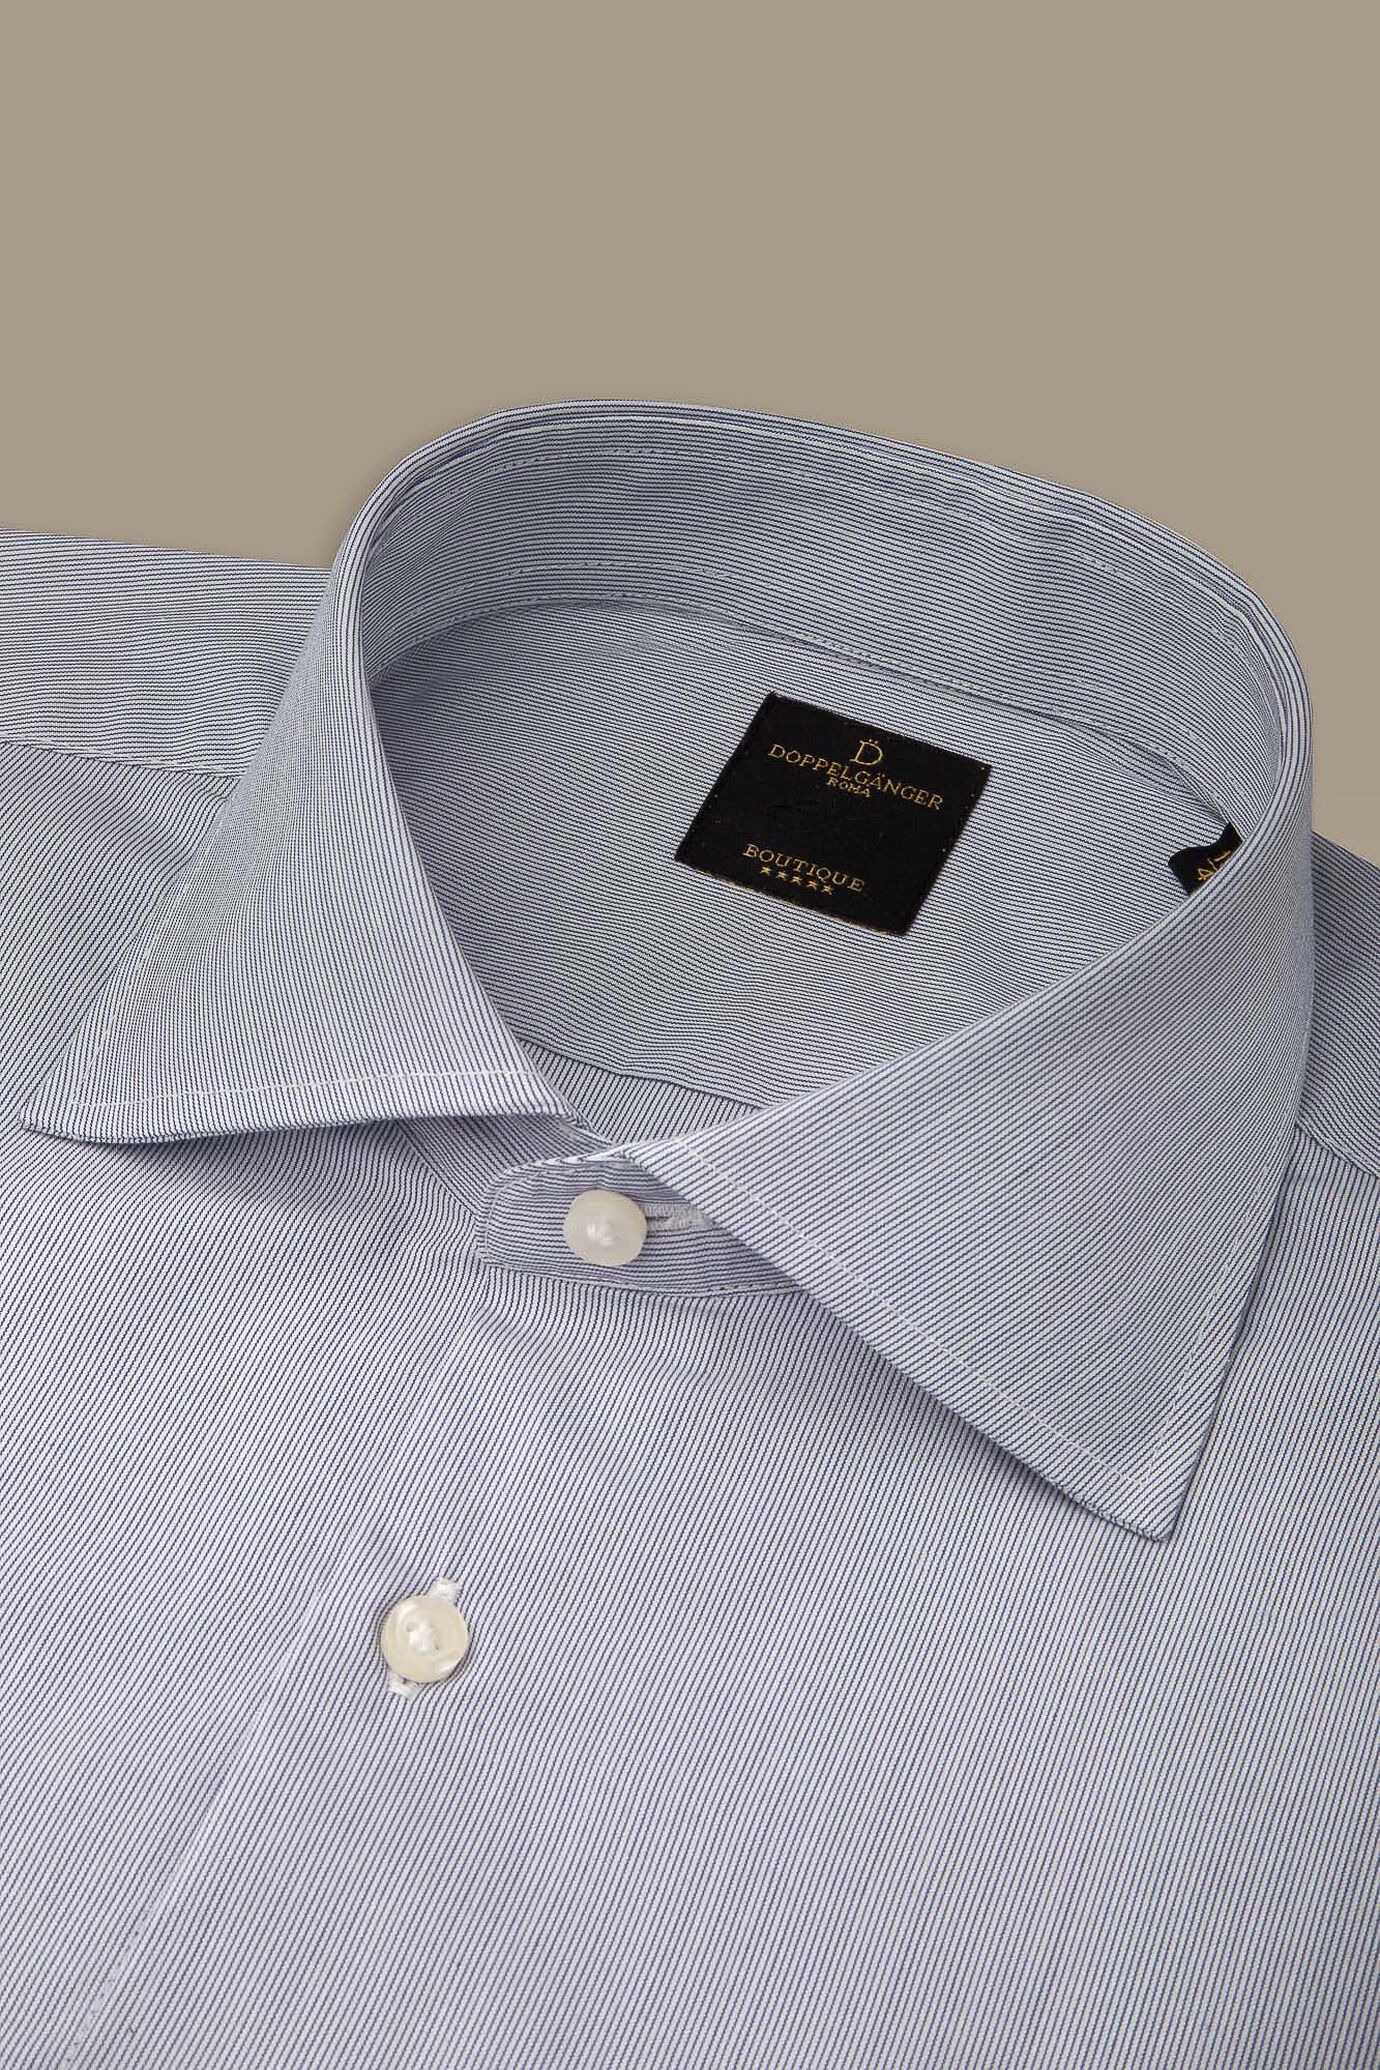 Camicia classica uomo collo francese tinto filo a righe sottili bicolore image number 1